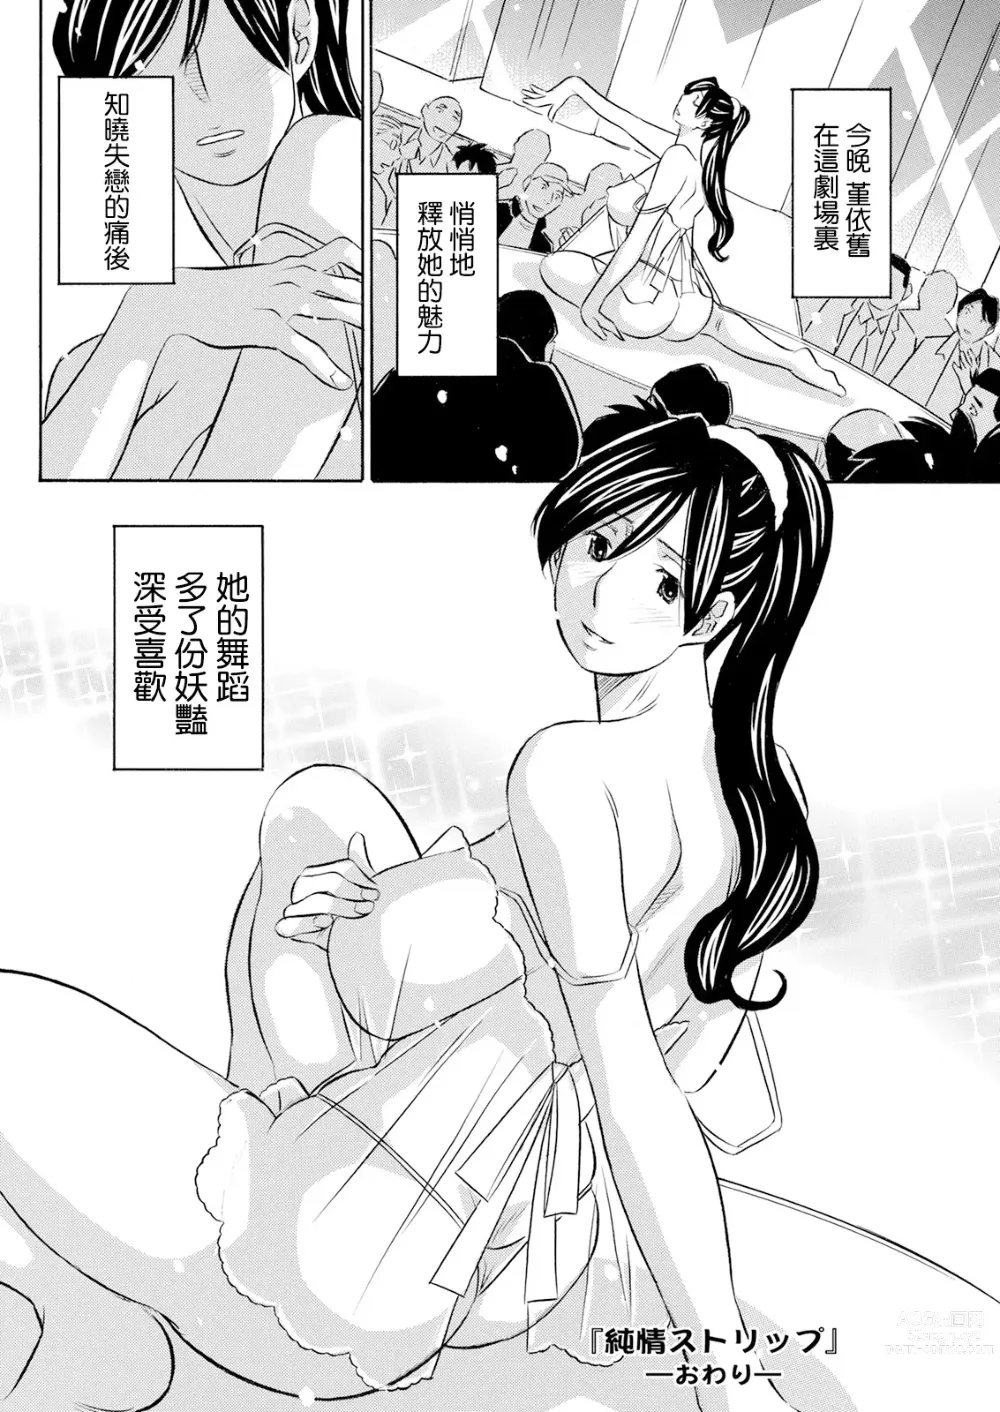 Page 18 of manga Junjou Strip